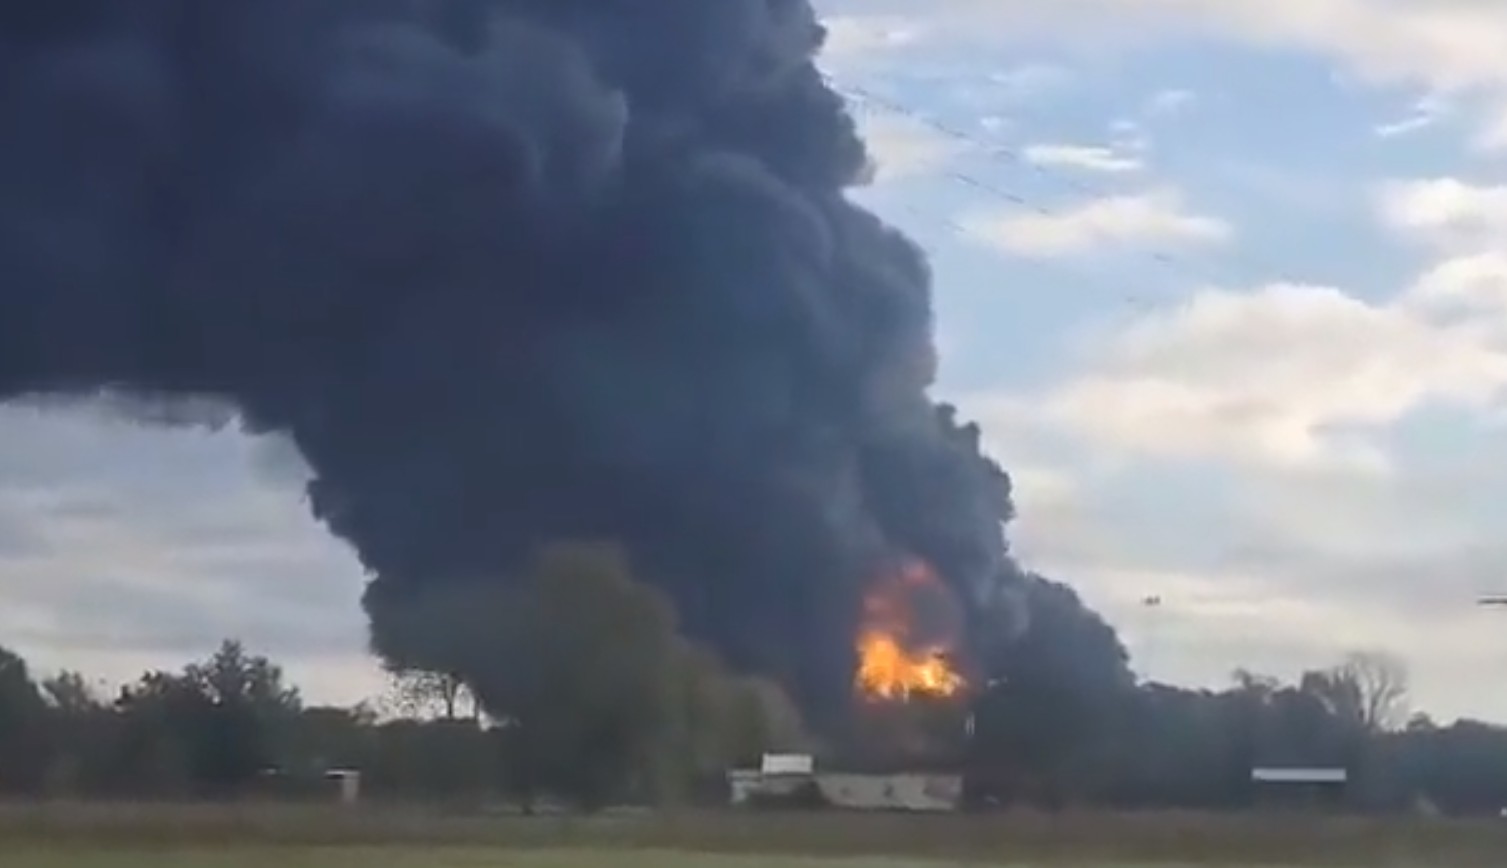 ΗΠΑ: Έκρηξη σε εργοστάσιο επεξεργασίας πετροχημικών - Πυρκαγιά, εκκενώσεις λόγω καπνού